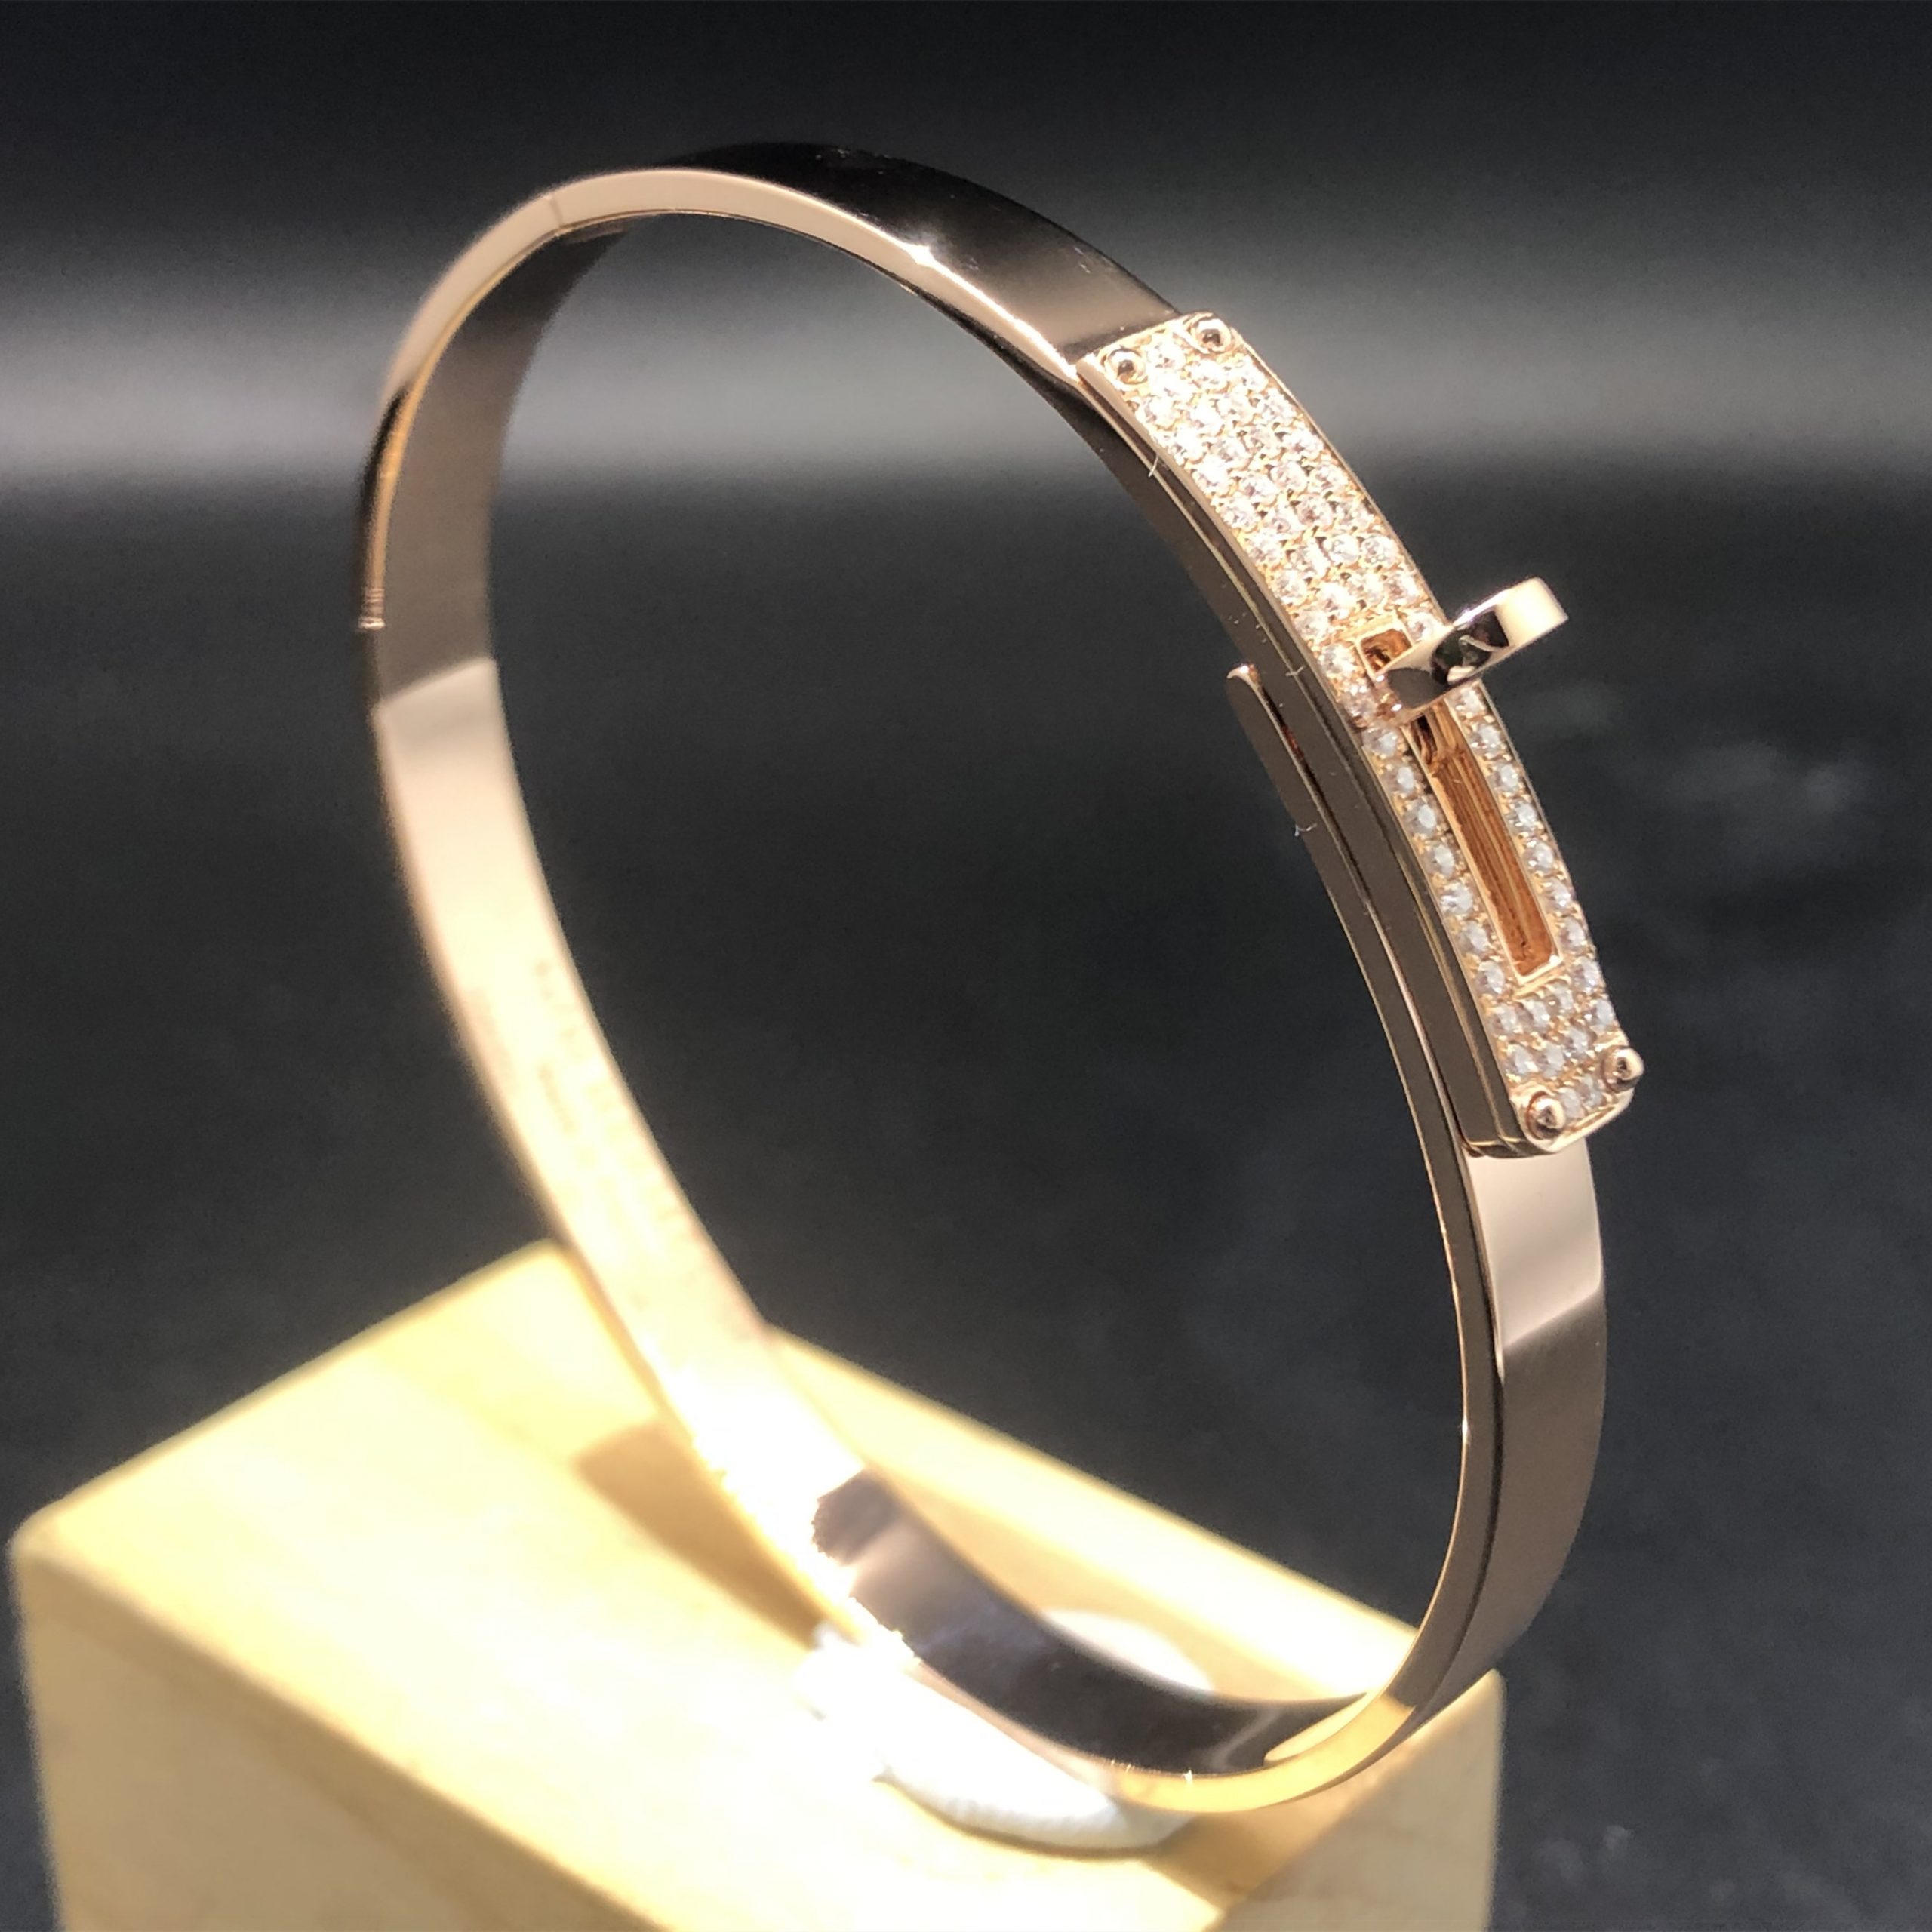 Hermes Kelly Bracelet Custom Made in 18K Rose Gold with 57 Diamonds,Small Model